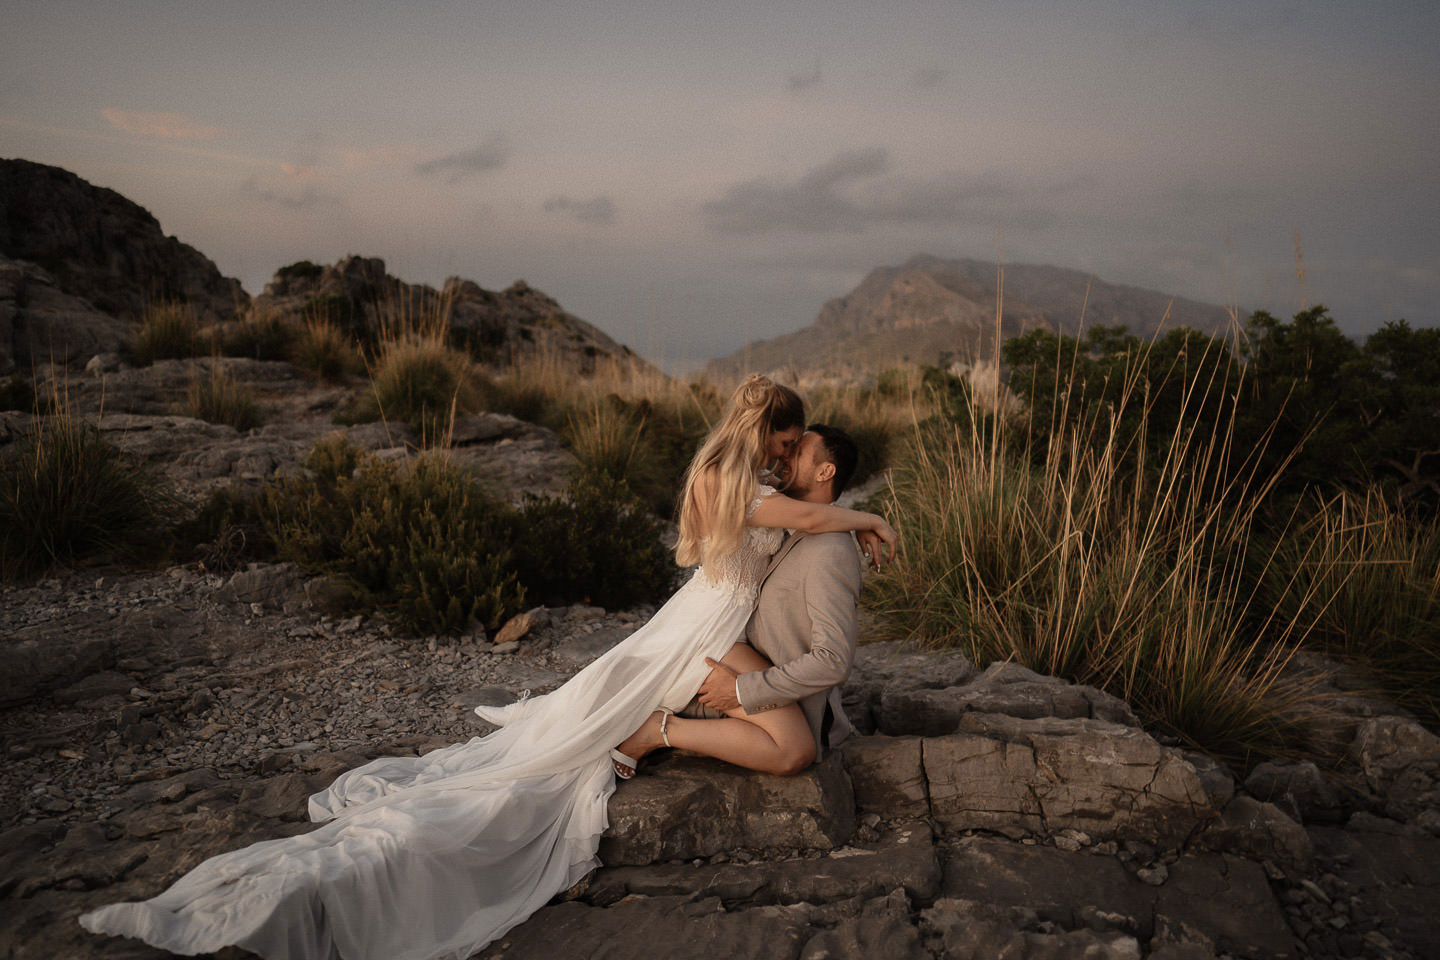 Hochzeitswahn - Ein Paar teilt einen zärtlichen Moment auf einem felsigen Gelände in der Dämmerung, wobei die Frau in einem fließenden Kleid auf dem Schoß des Mannes sitzt und sich umarmt, vor der Kulisse entfernter Berge unter einem sanften, düsteren Himmel.